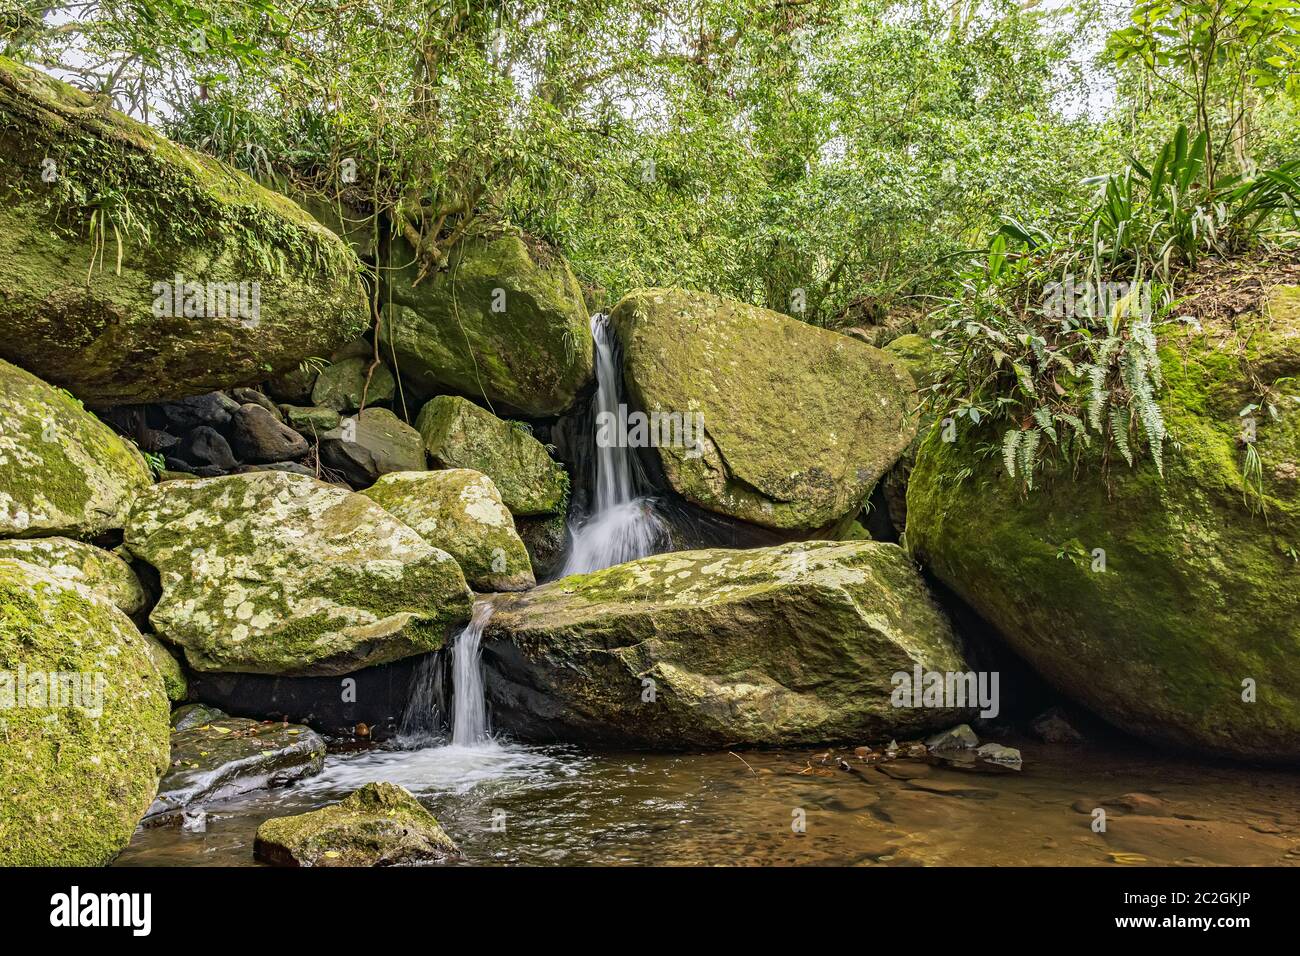 Petite cascade au milieu de la végétation de la forêt tropicale de l'île d'Ilhabela Banque D'Images